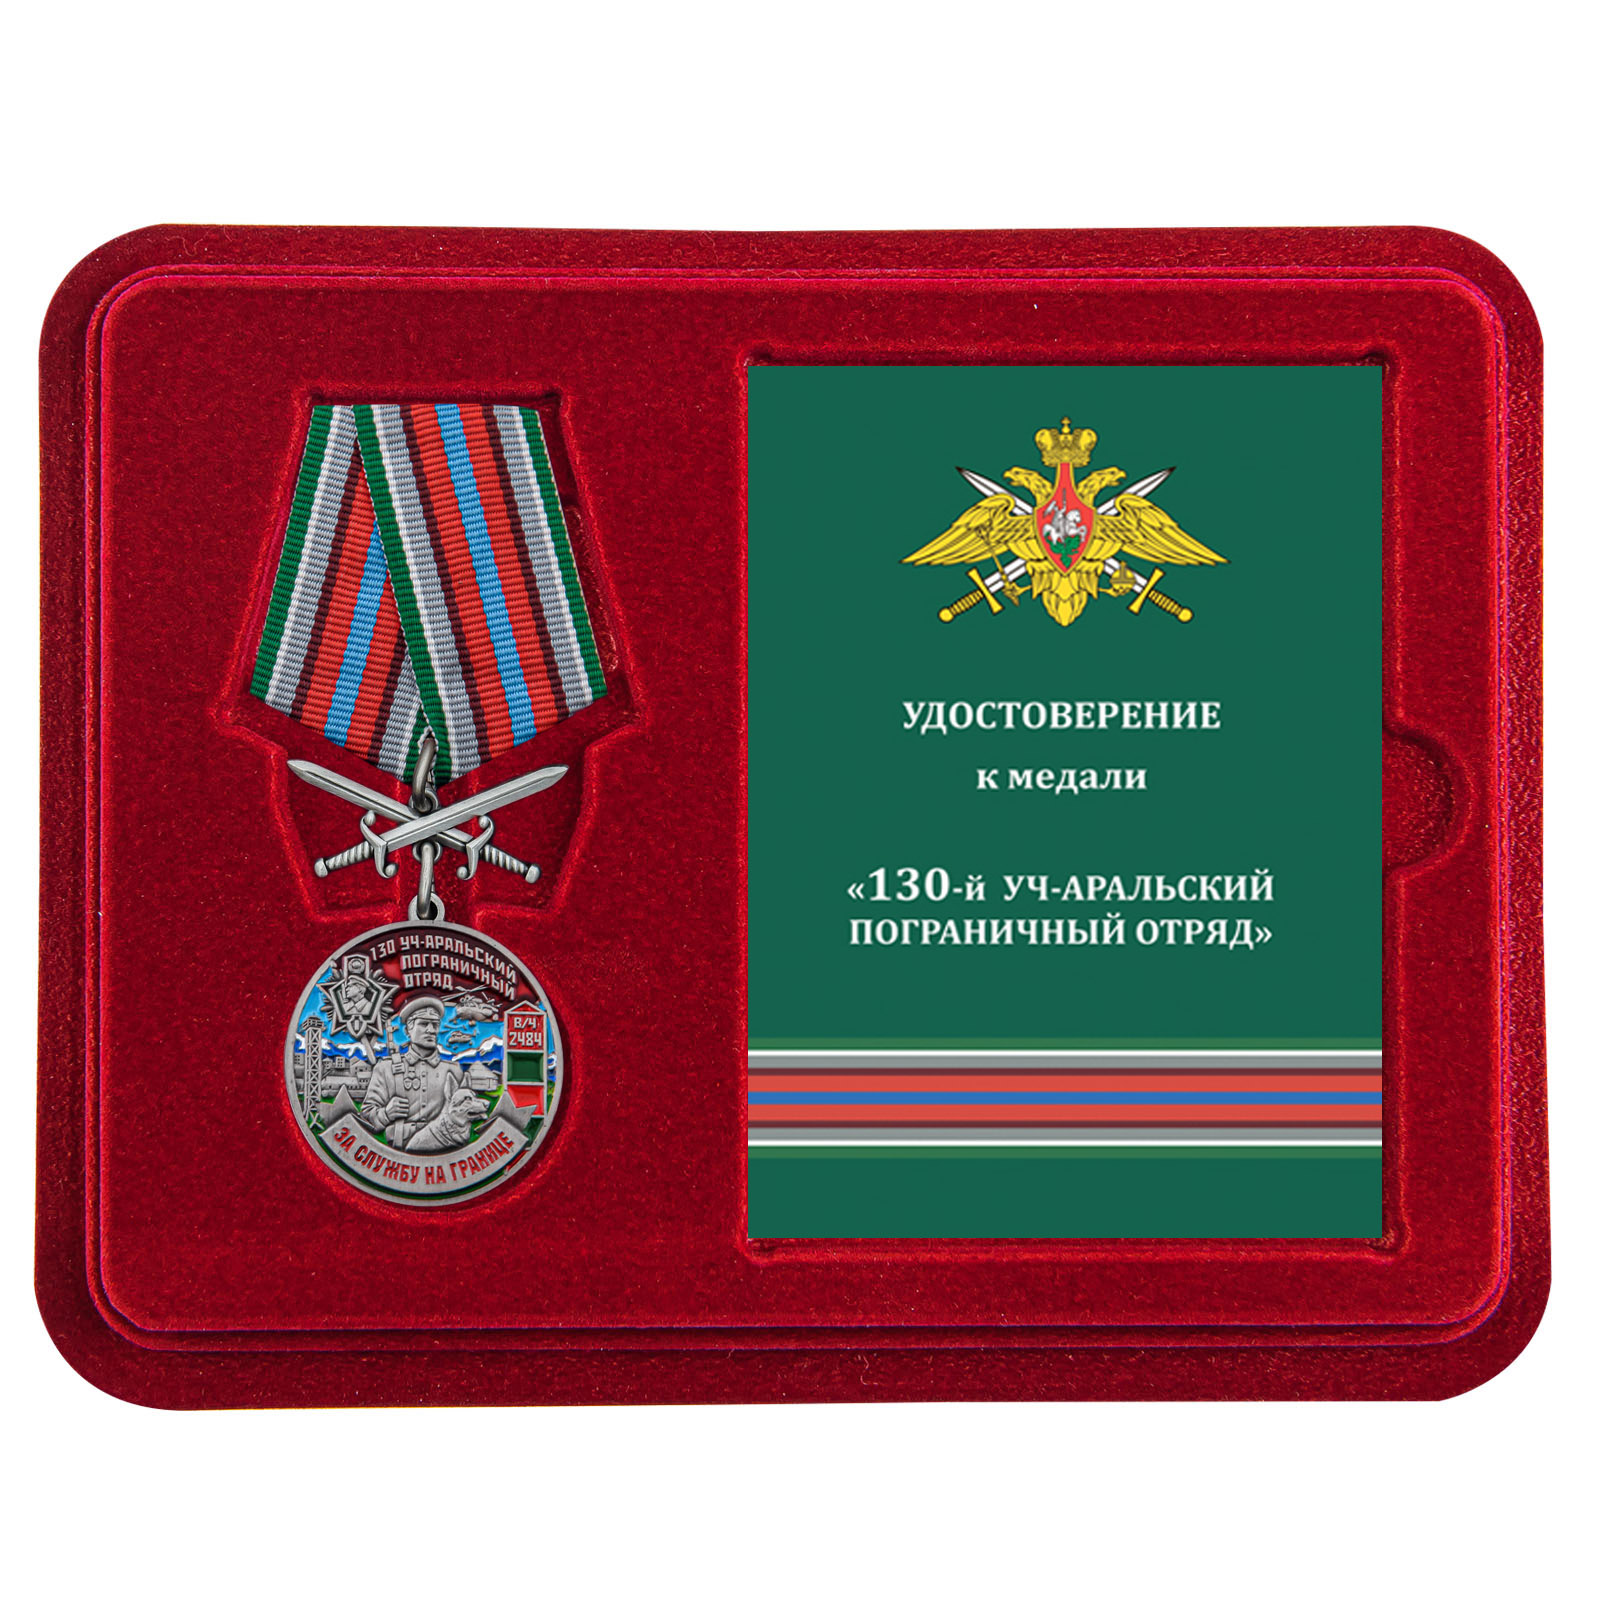 Купить медаль За службу в Уч-Аральском пограничном отряде выгодно